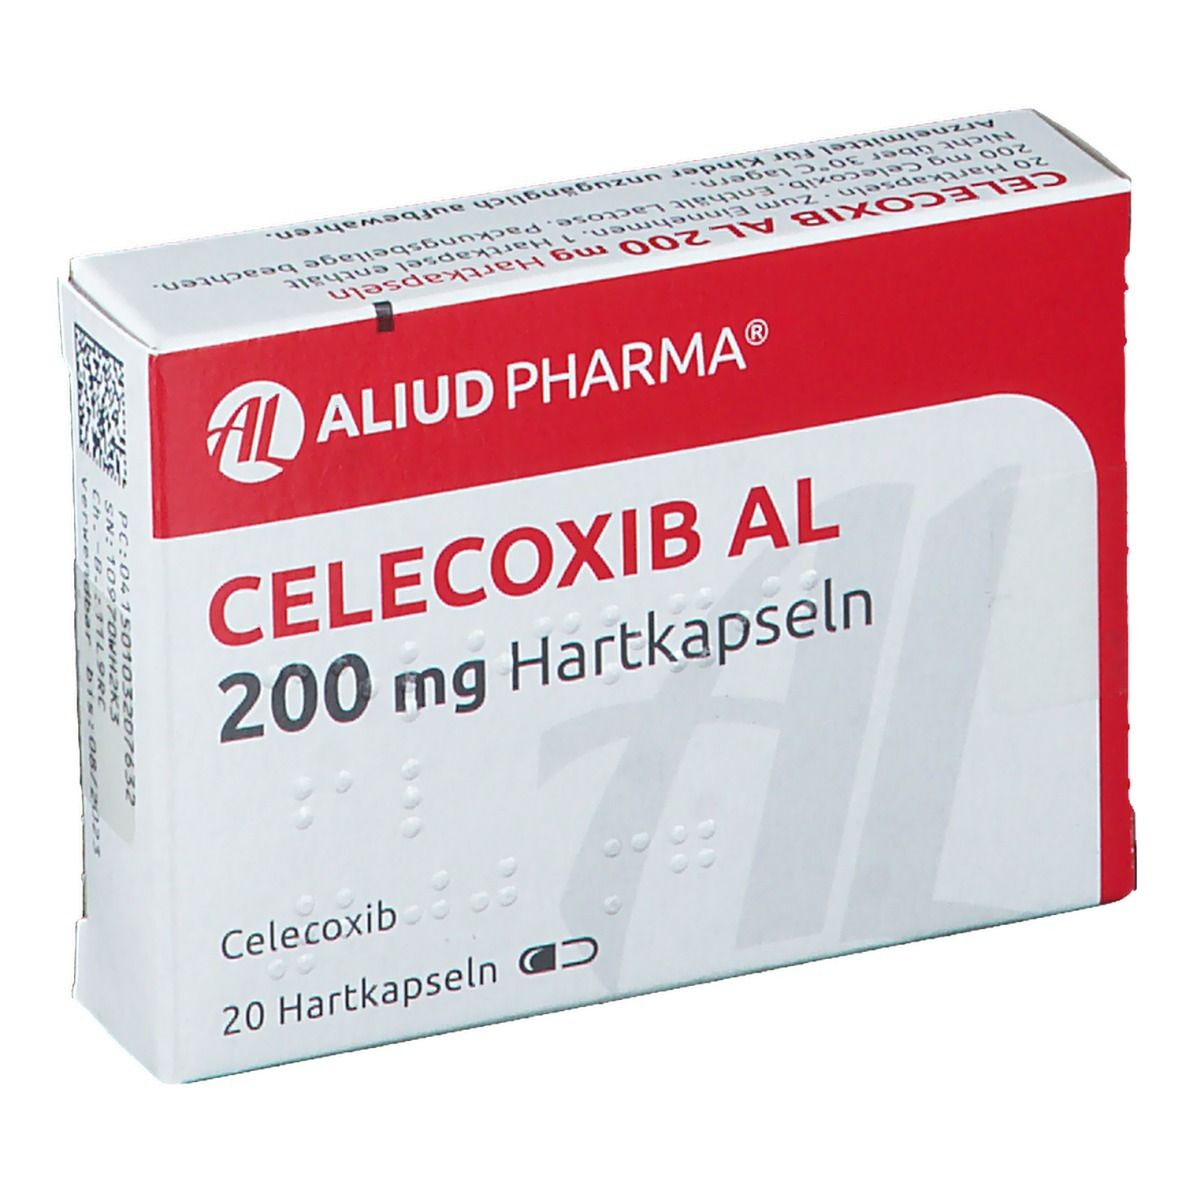 Celecoxib AL 200 mg